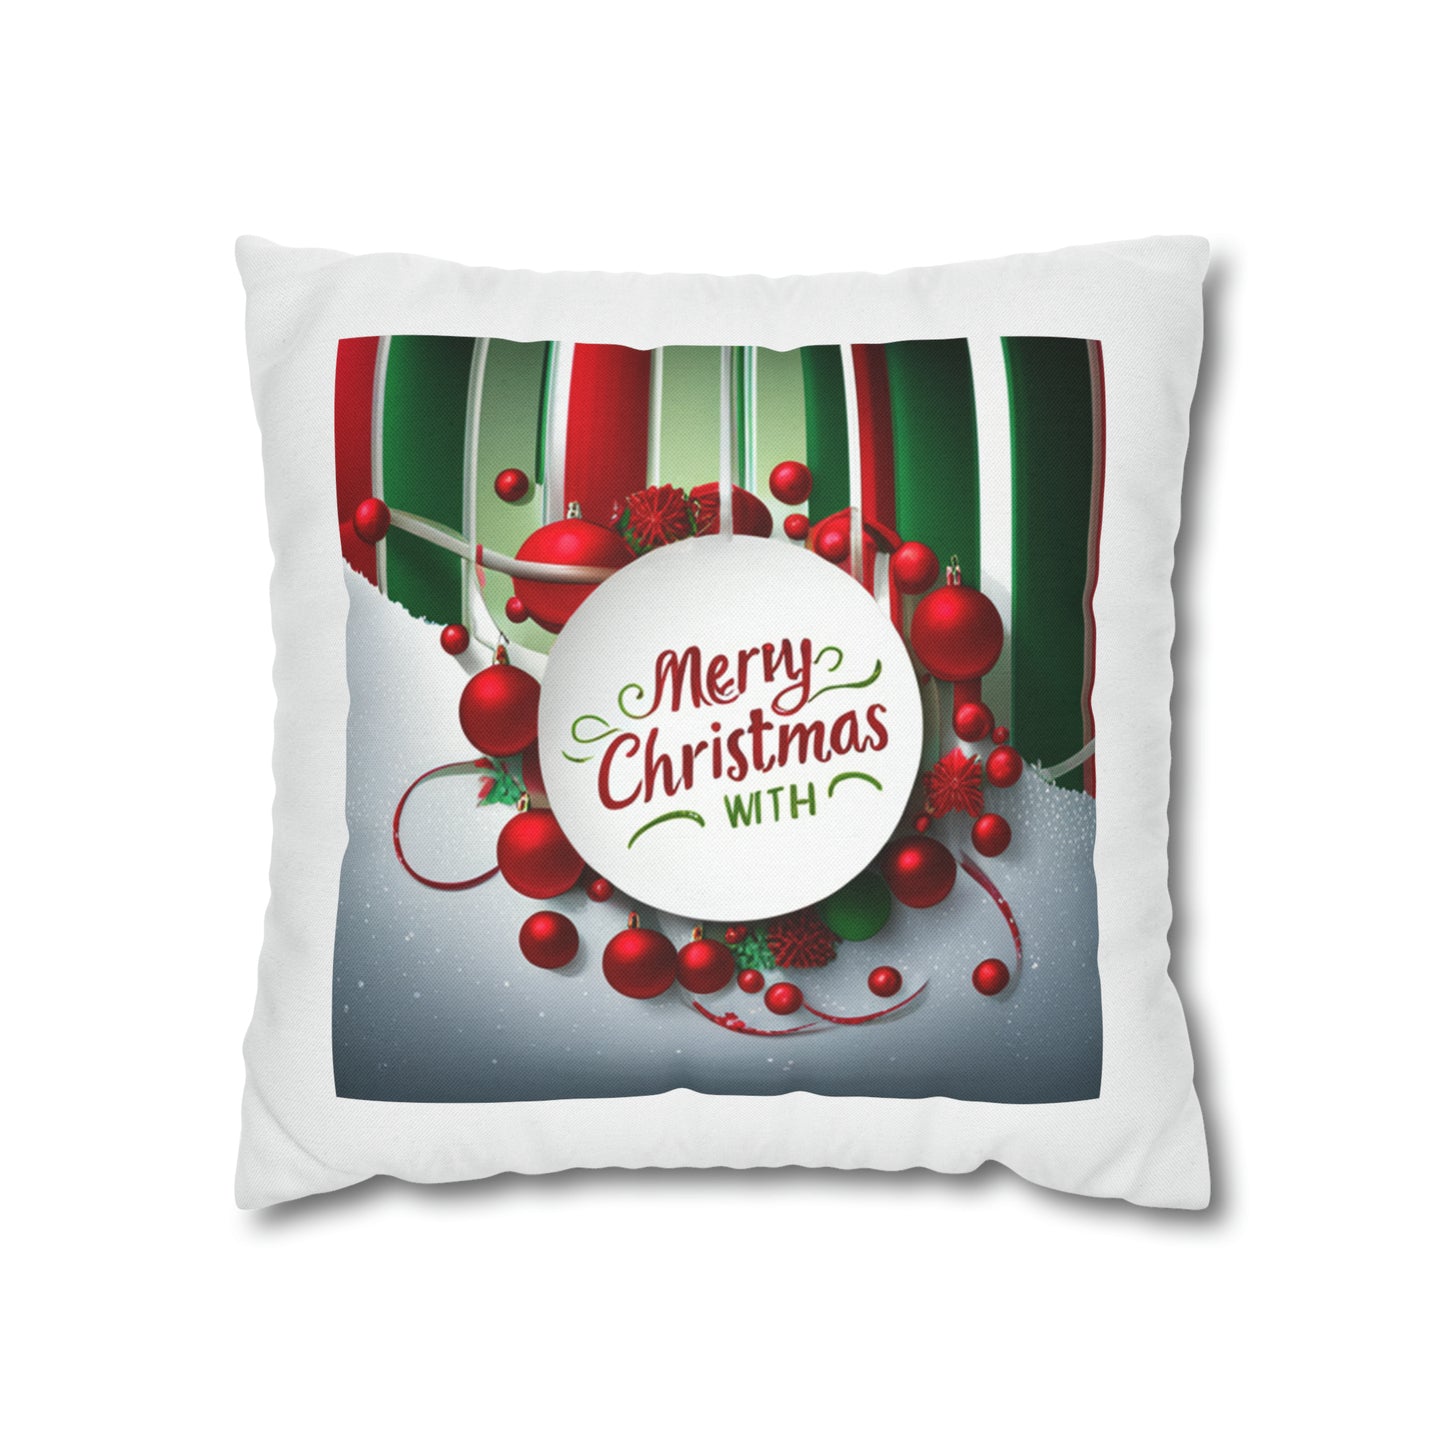 Merry Christmas Pillow Case Spun Polyester Square Pillow Case Holiday Season Pillow Case